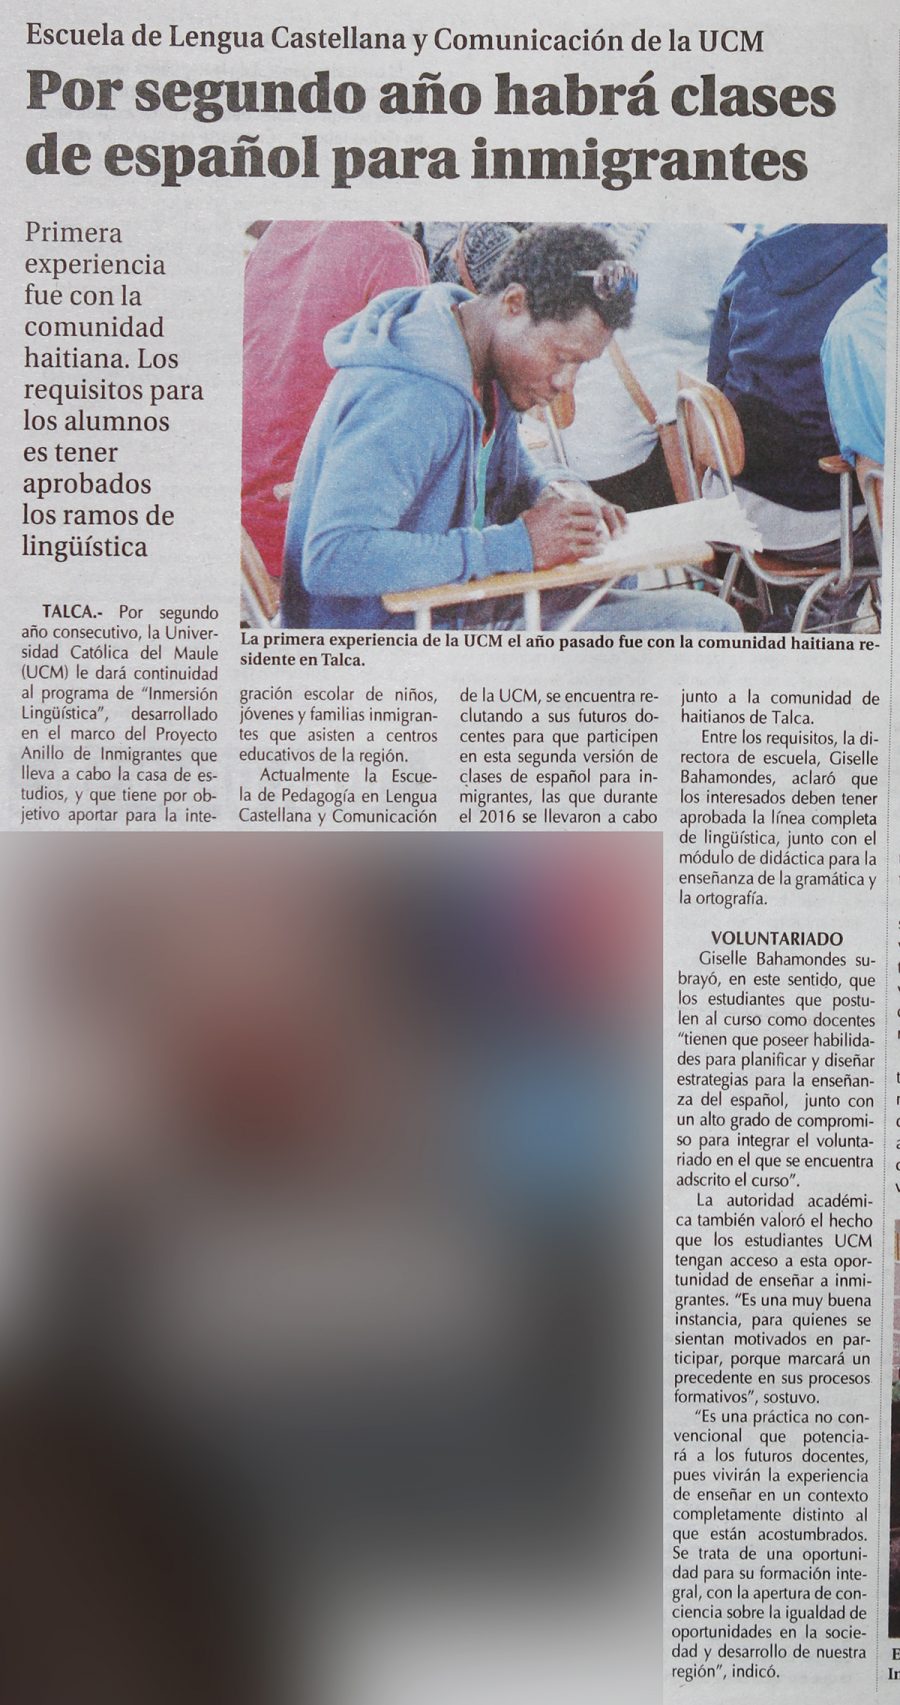 02 de abril en Diario El Centro: “Por segundo año habrá clases de español para inmigrantes”